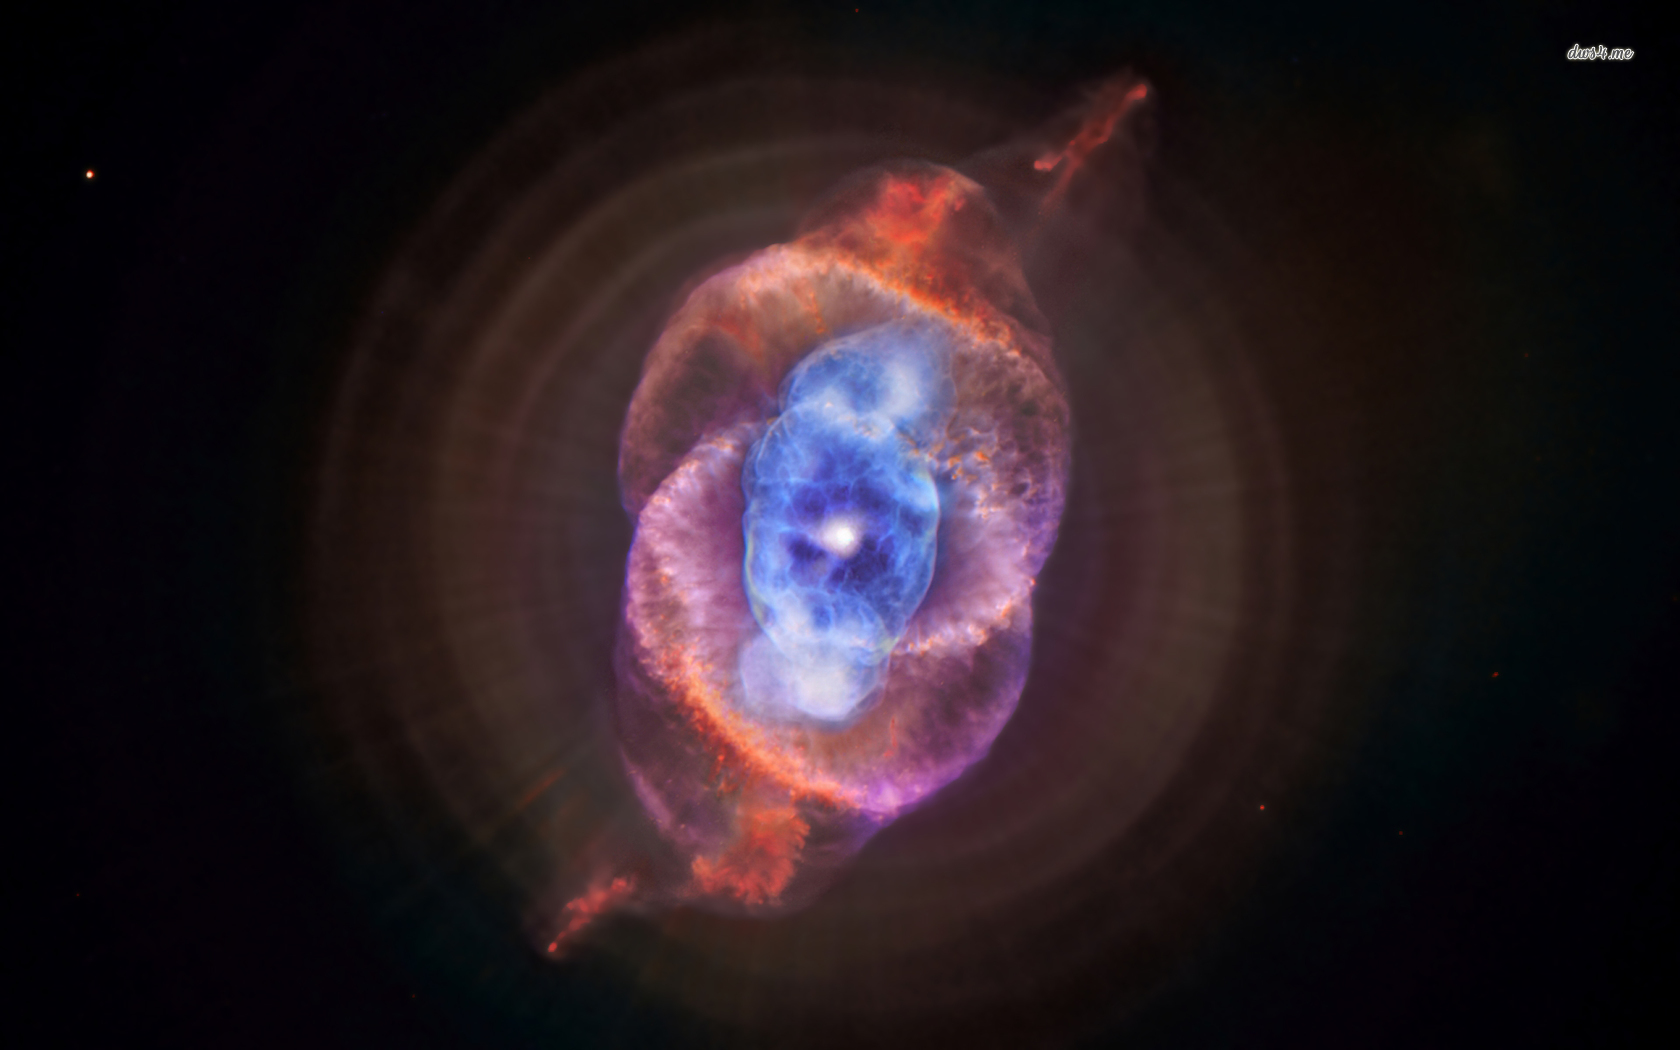 🔥 [43+] Cat's Eye Nebula Wallpaper | WallpaperSafari